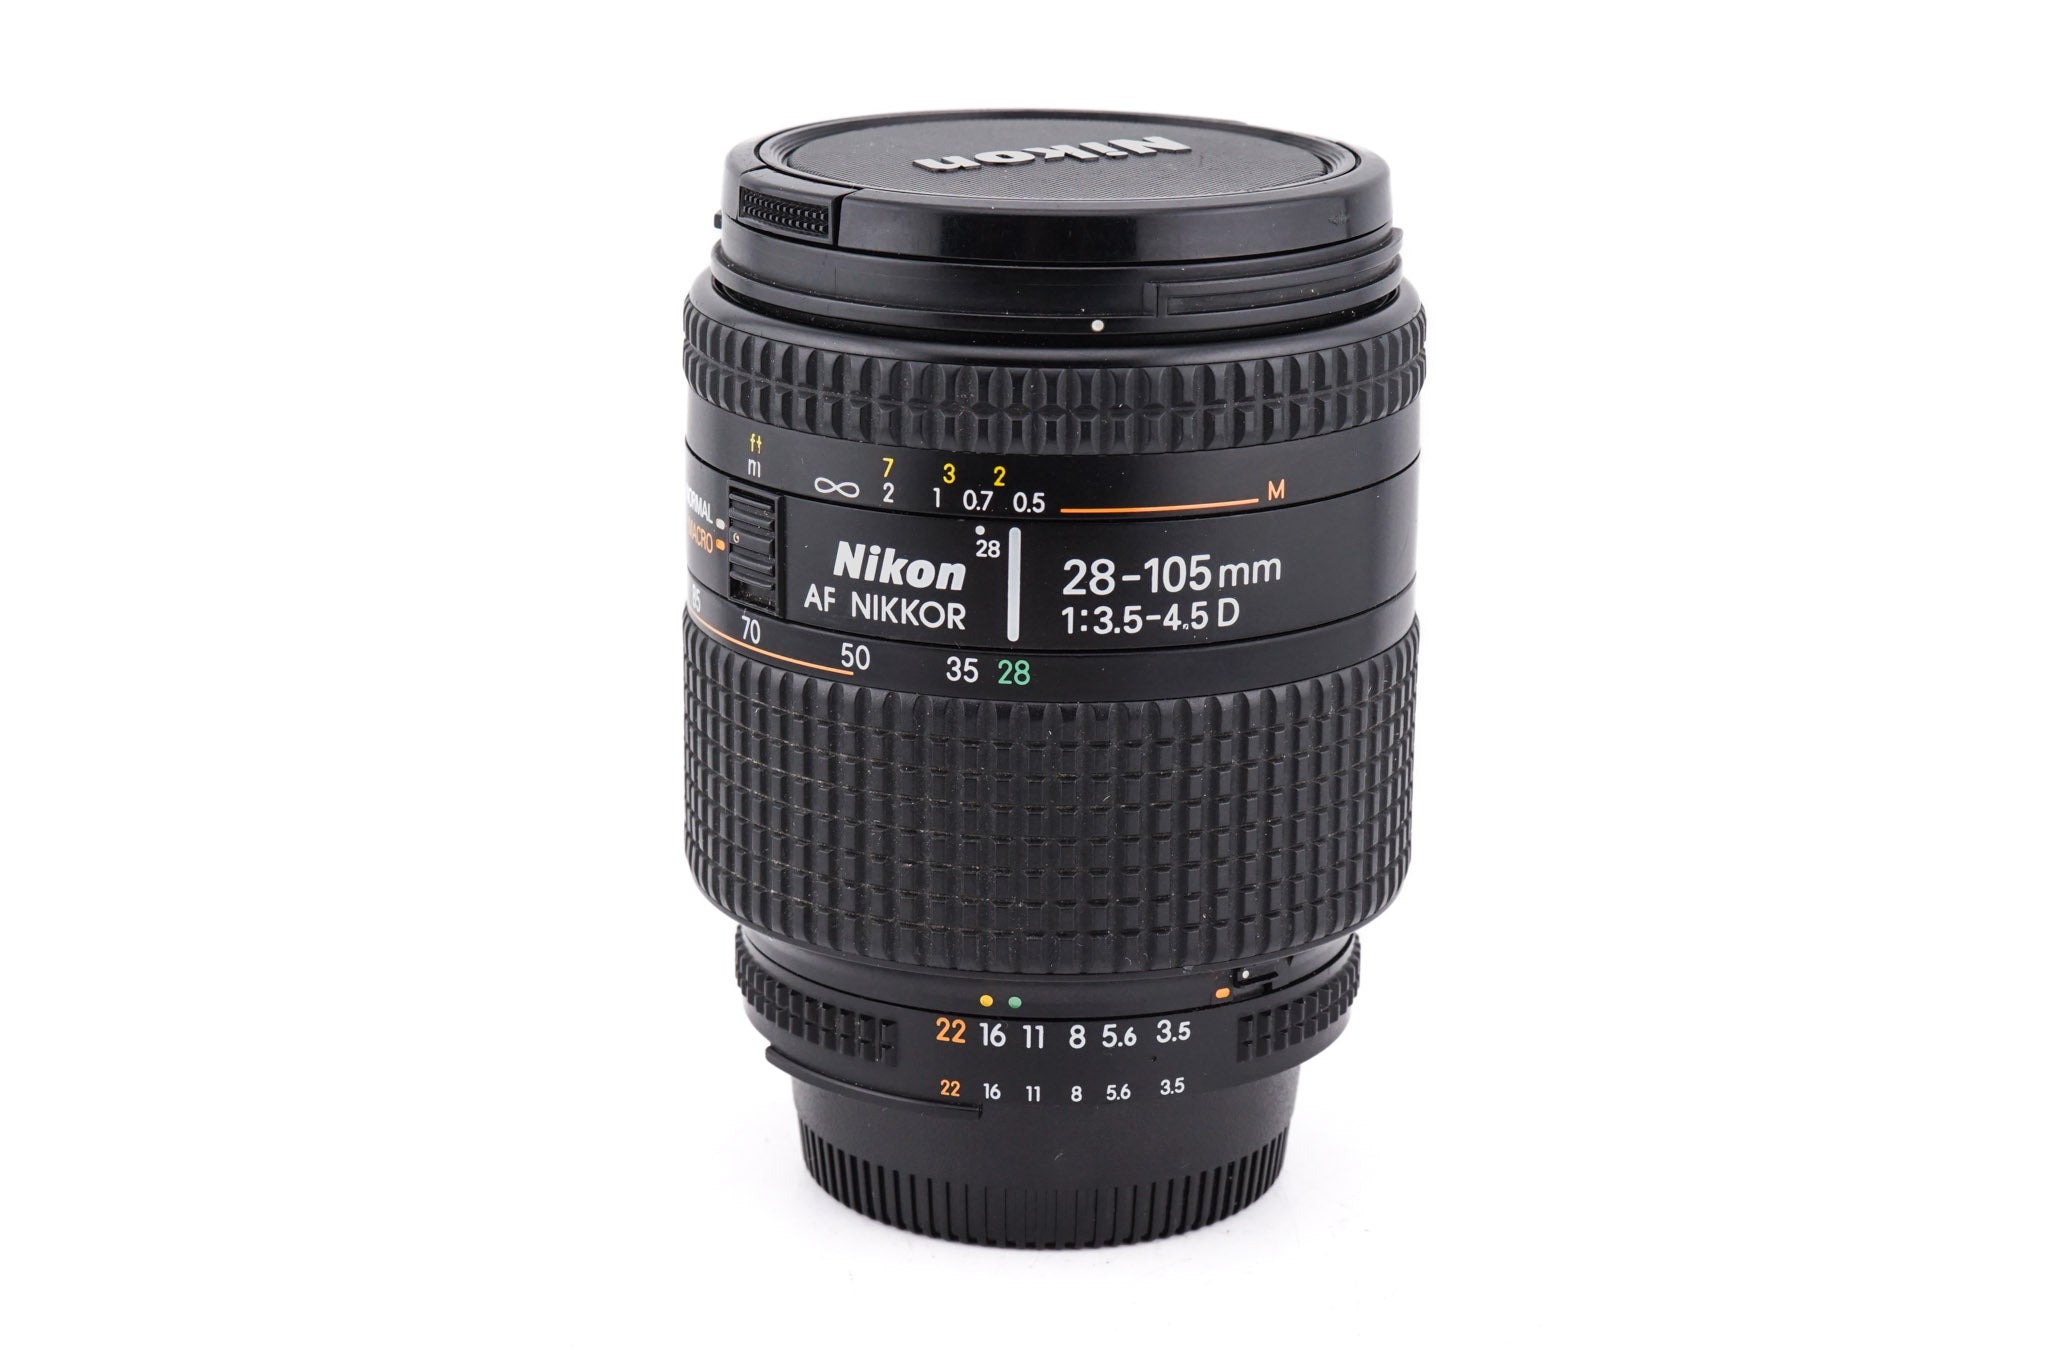 Nikon 28-105mm f3.5-4.5 AF Nikkor D - Lens